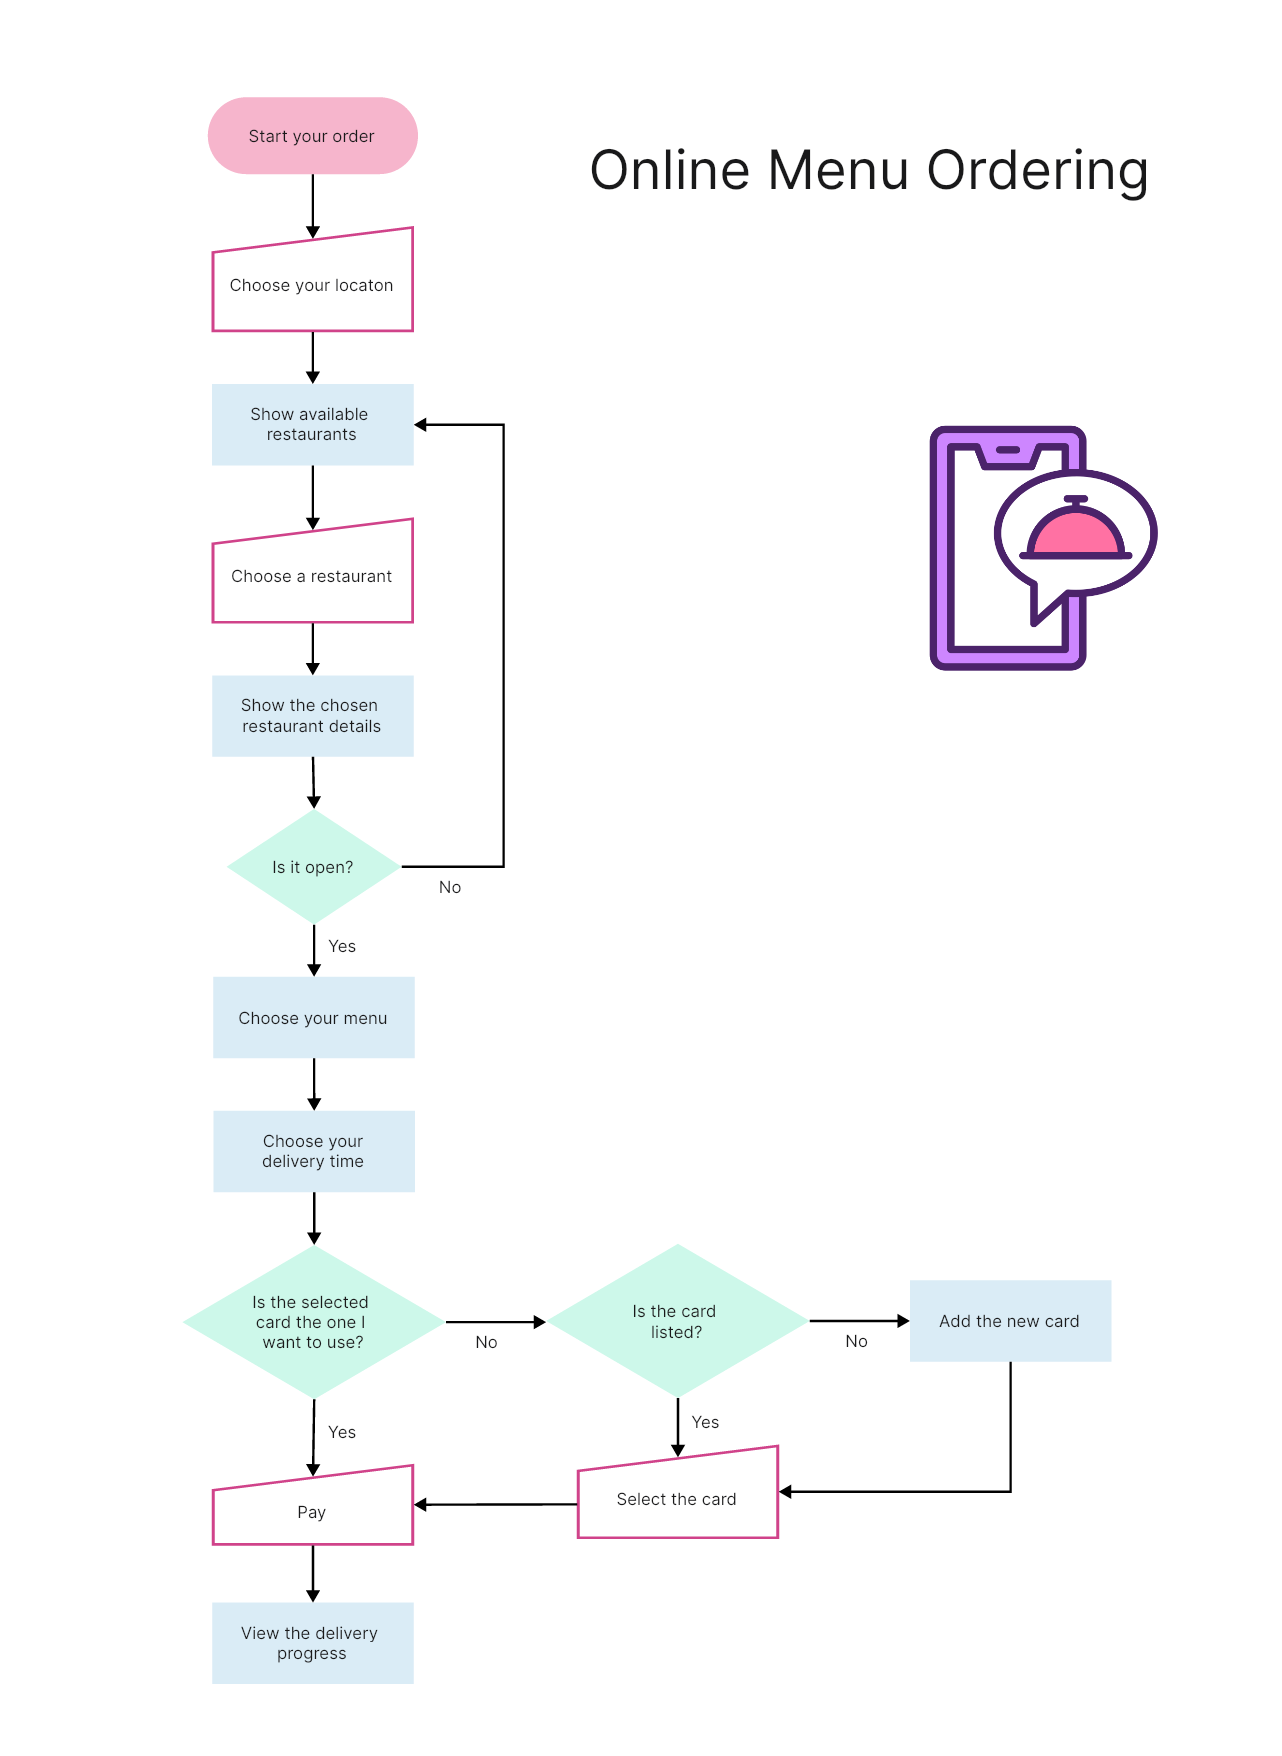 14. Diagrama de flujo del proceso de pedido de menú en línea